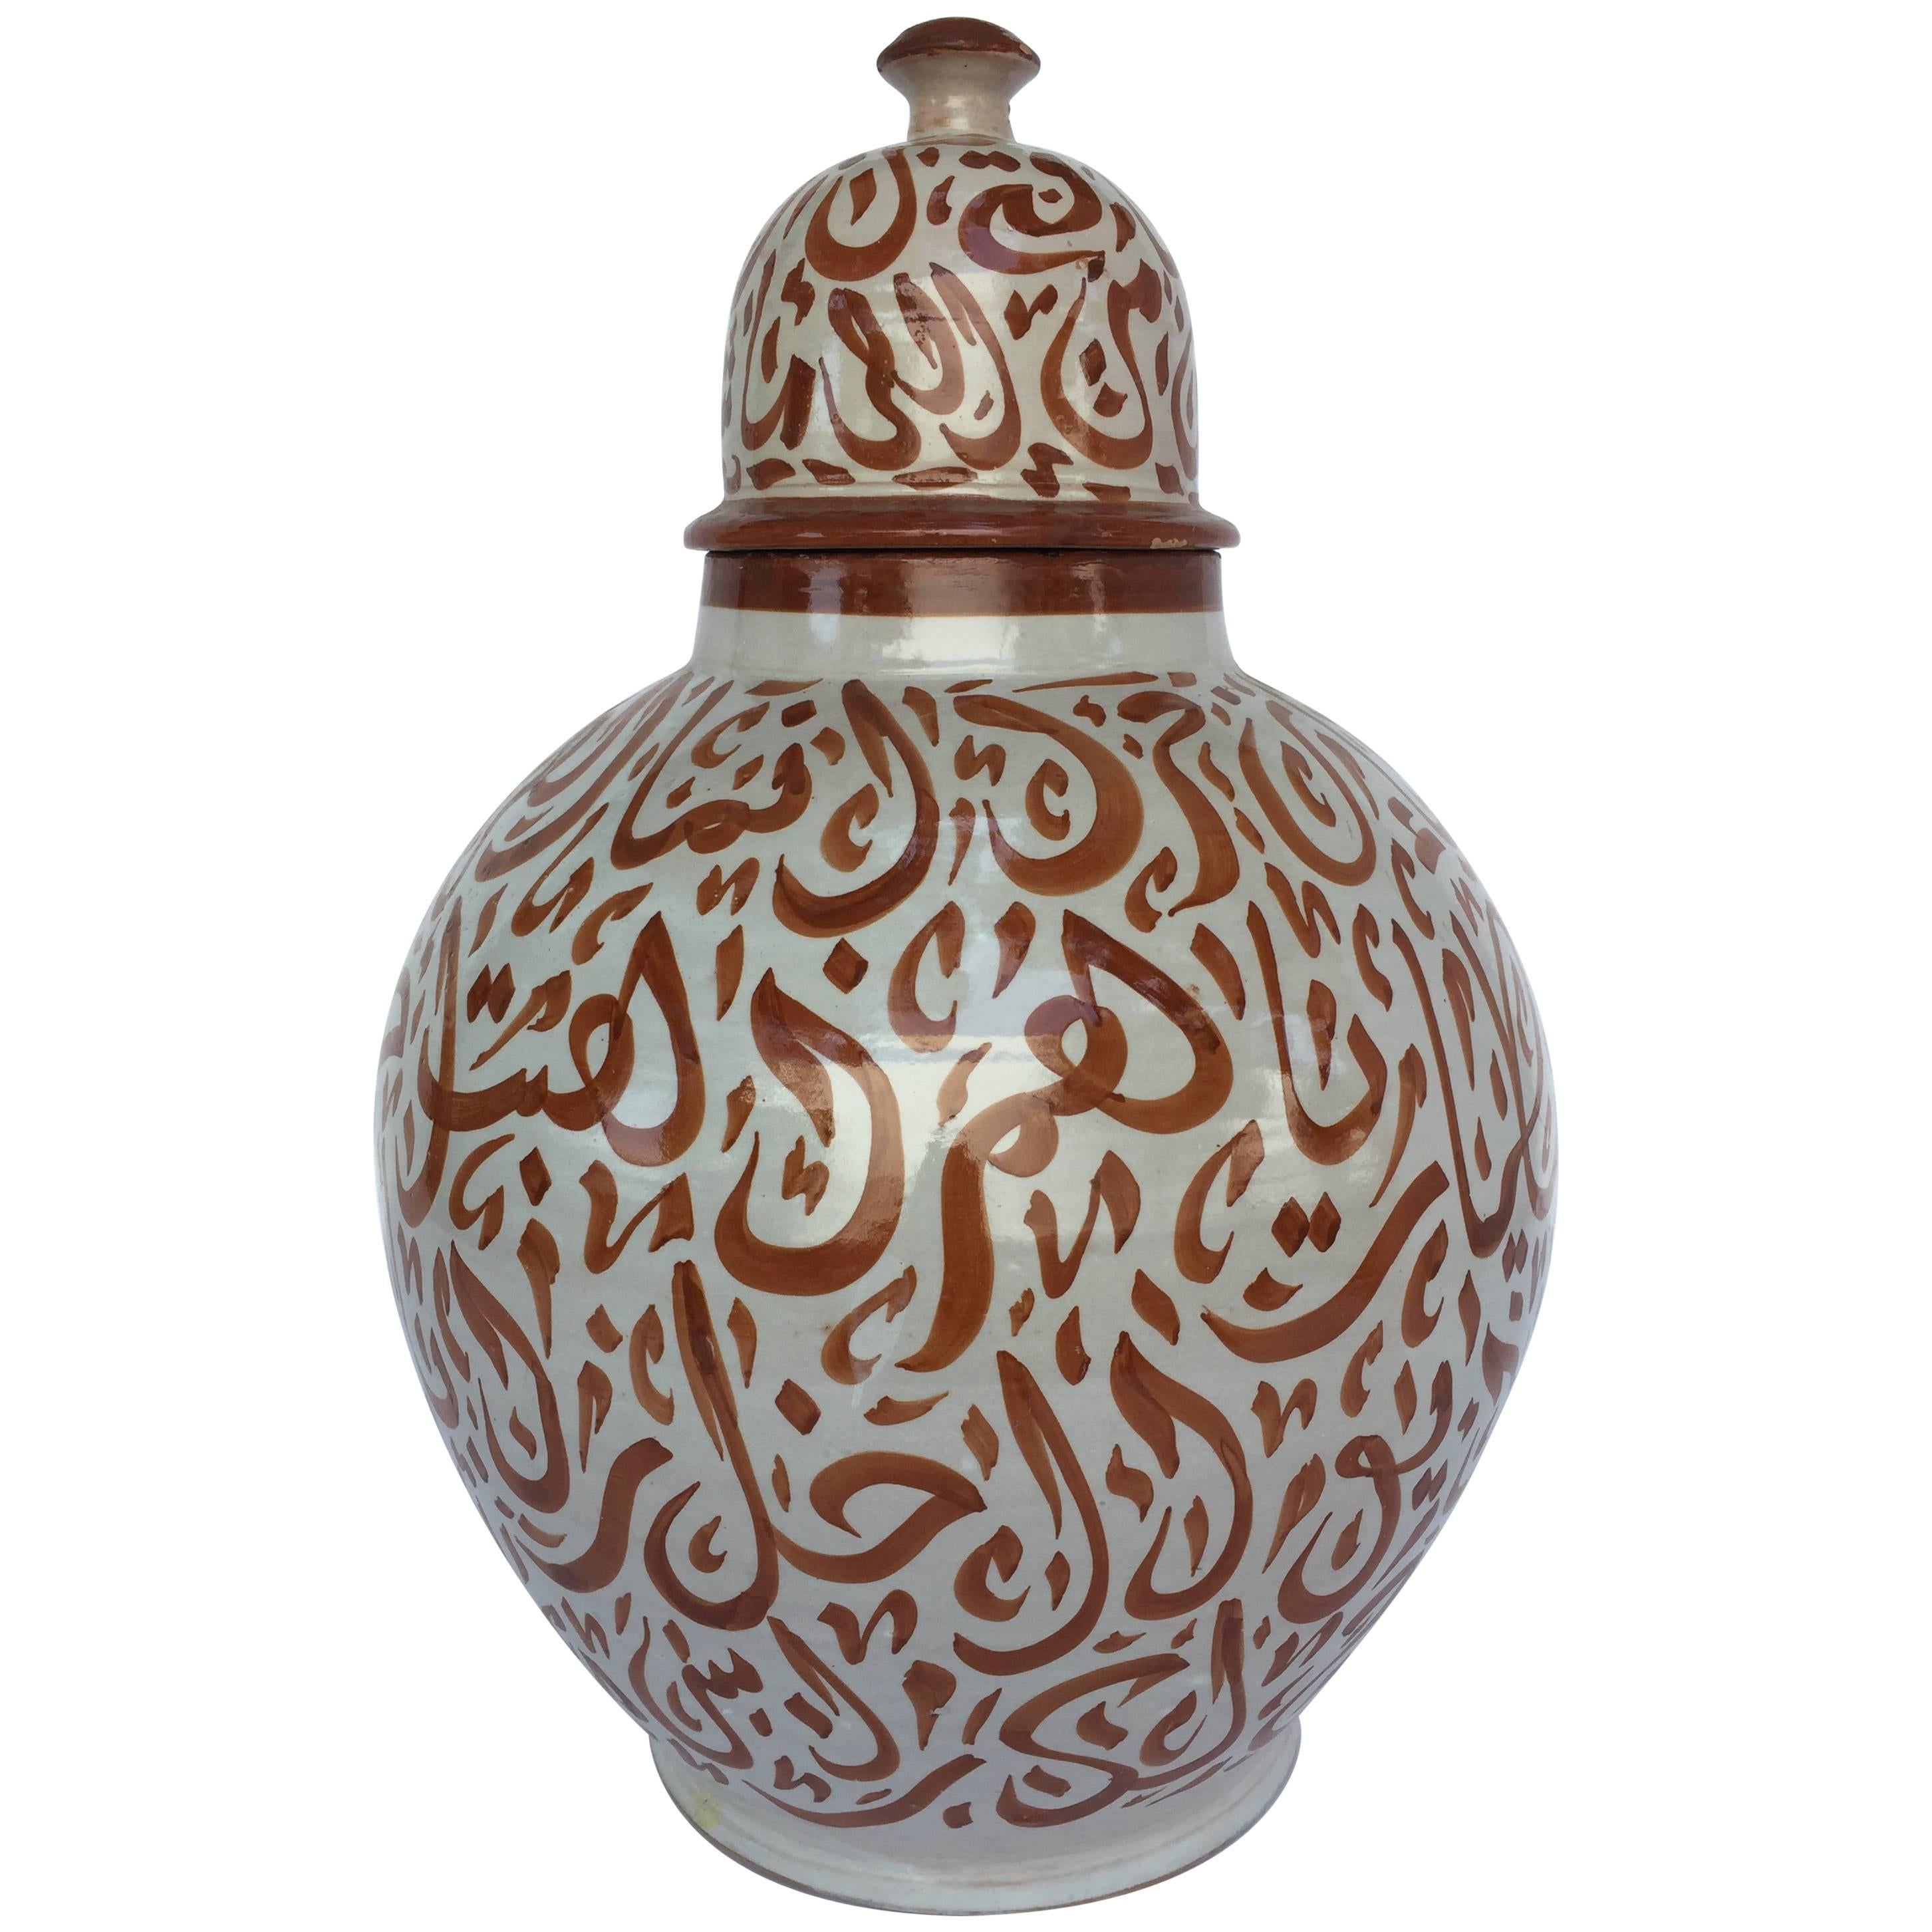 Marokkanische Keramik-Urne mit Deckel aus Fez mit arabischer Kalligraphieschrift